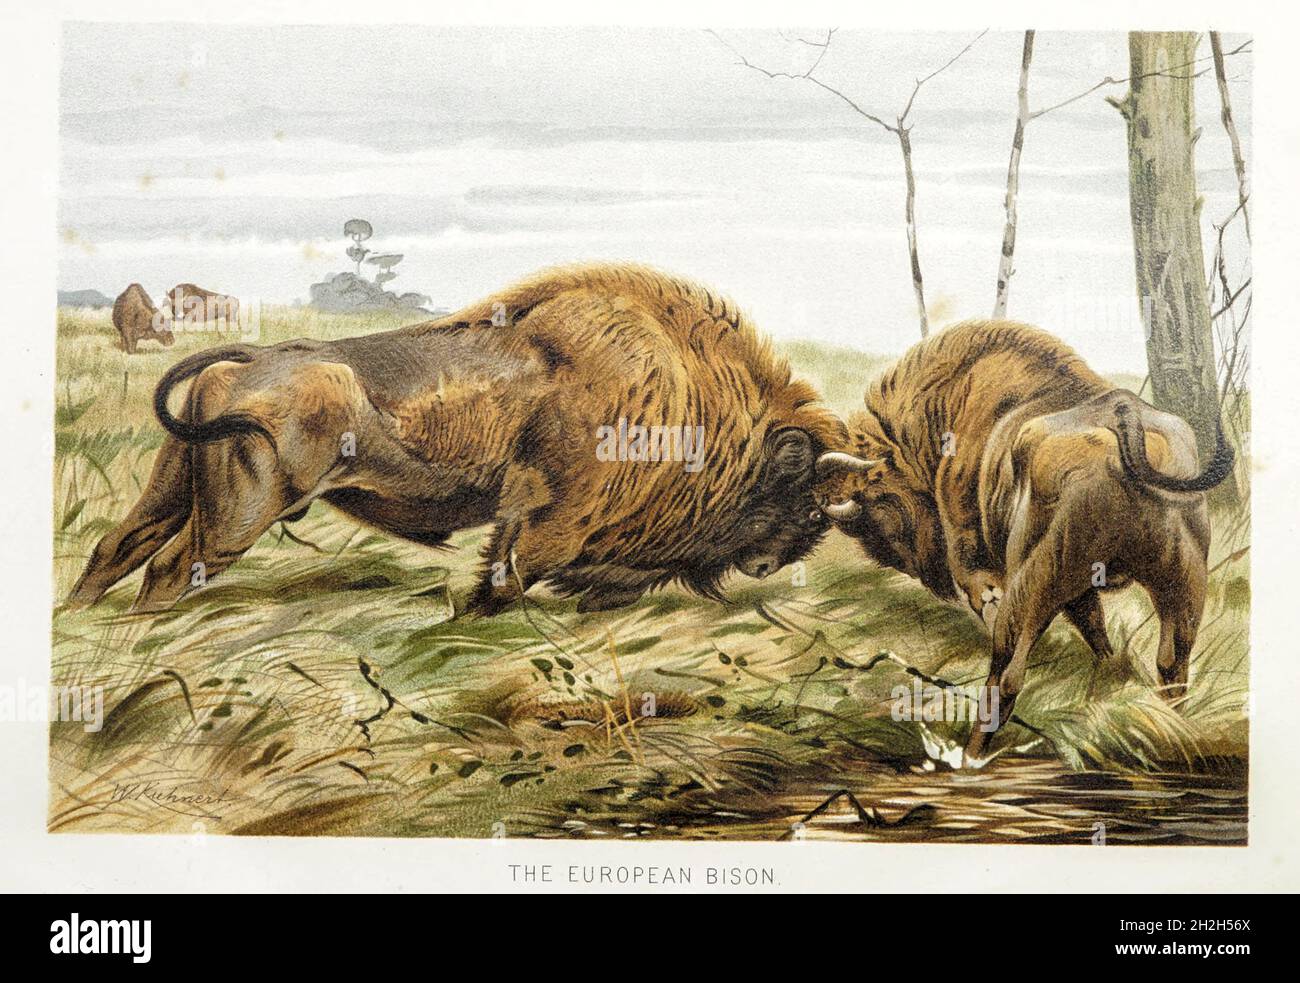 El bisonte europeo (Bison bonasus) o el bisonte de madera europeo, también conocido como el wisent o el zubr o coloquialmente el búfalo europeo, es una especie europea de bisonte. Del libro ' Royal Natural History ' Volumen 2 editado por Richard Lydekker, publicado en Londres por Frederick Warne & Co en 1893-1894 Foto de stock